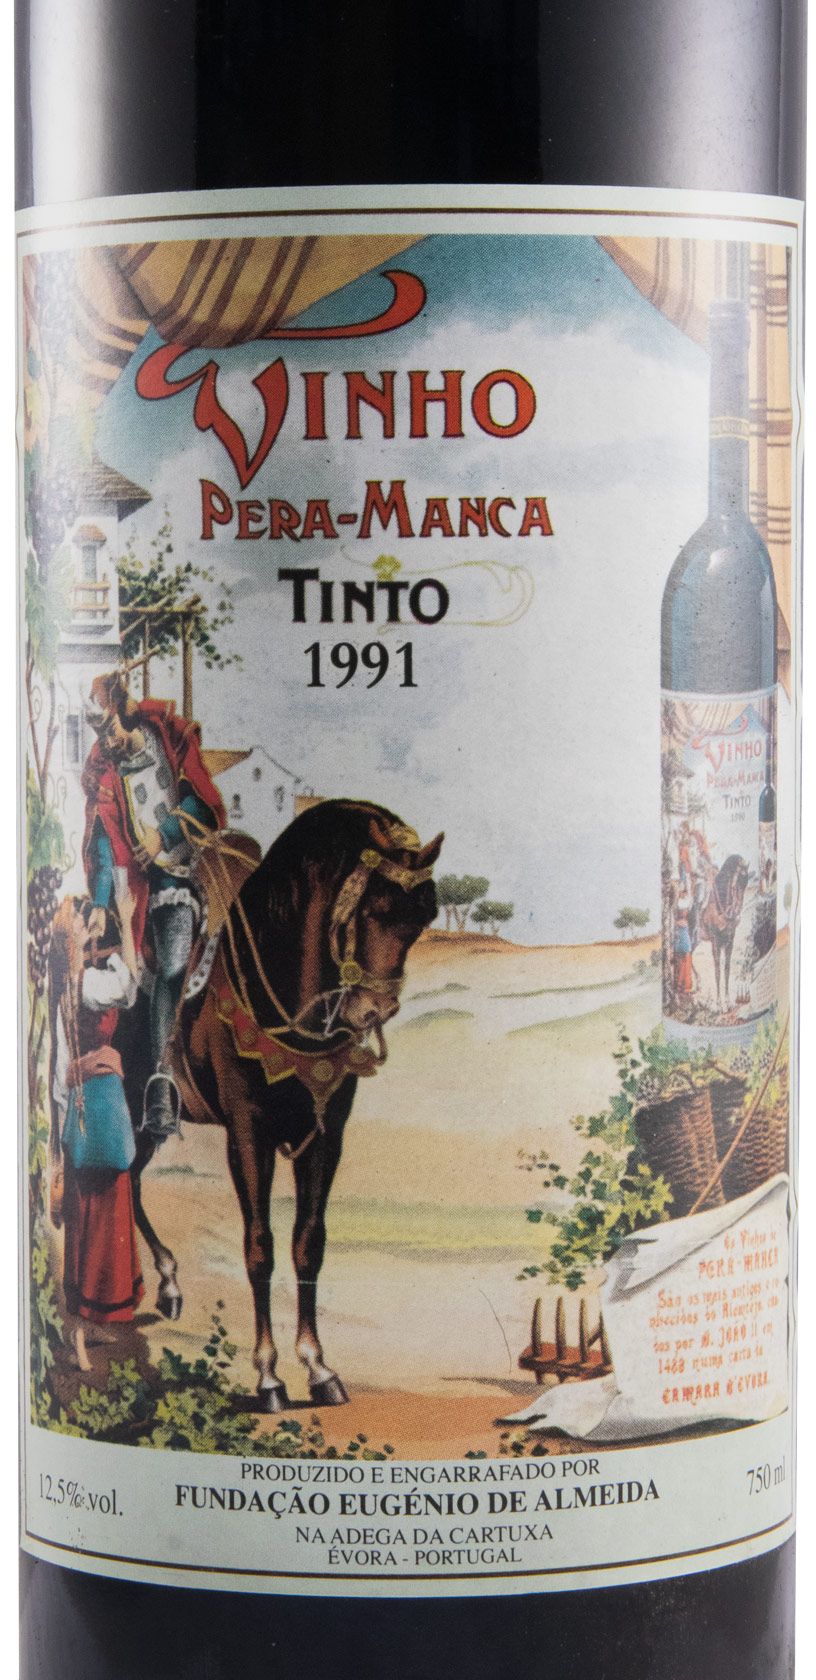 1991 Pera-Manca tinto